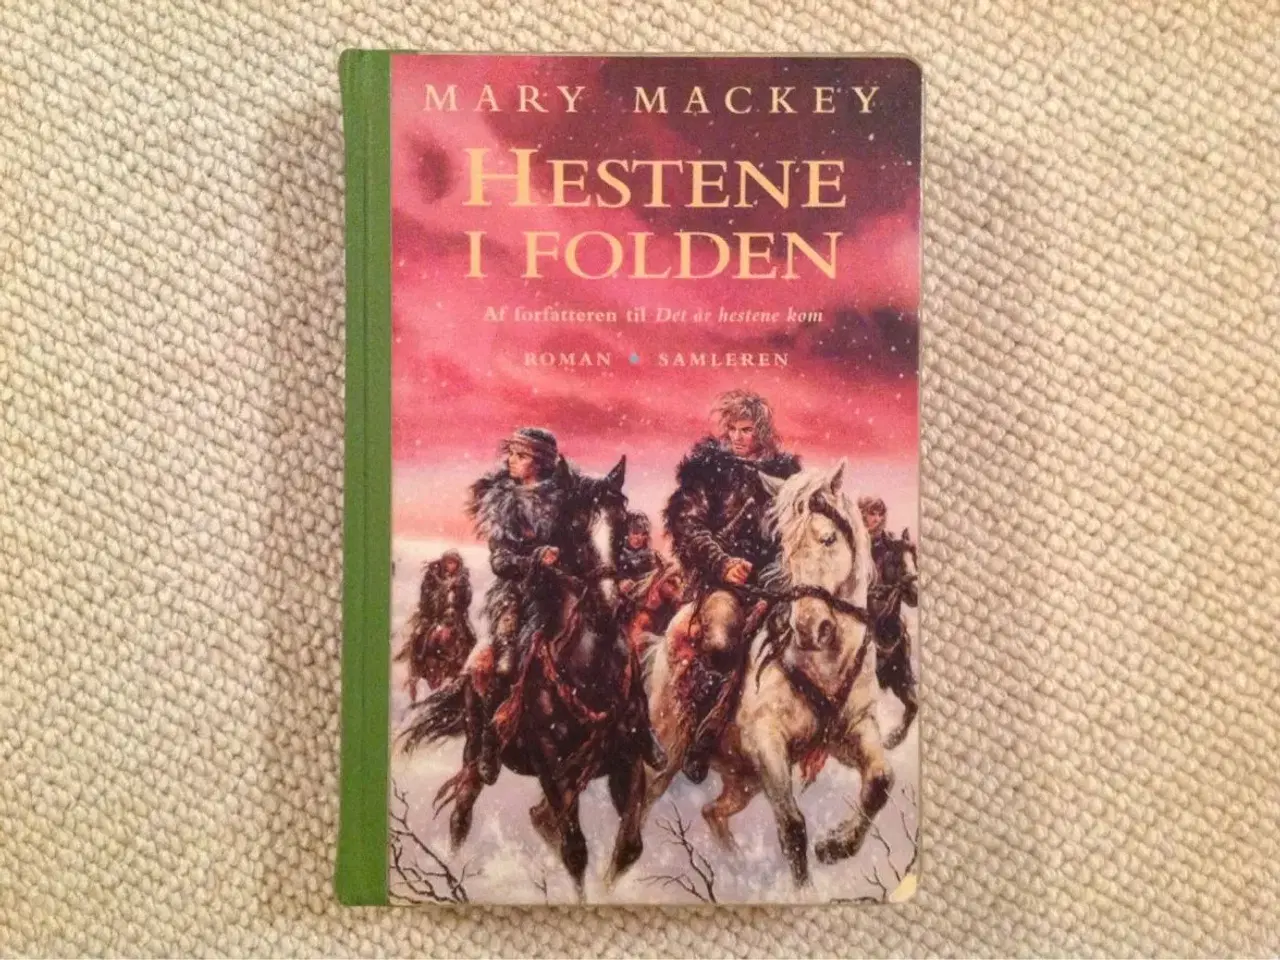 Billede 2 - Hestene i folden" af Mary Mackey